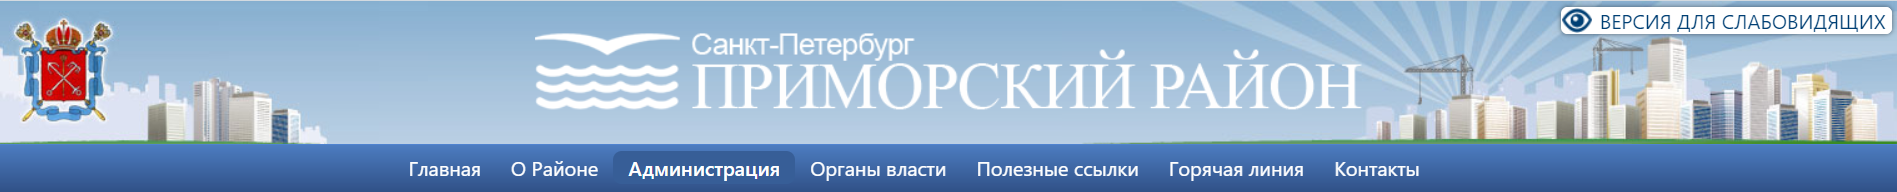 Ссылка на страницу отдела образования Приморского района